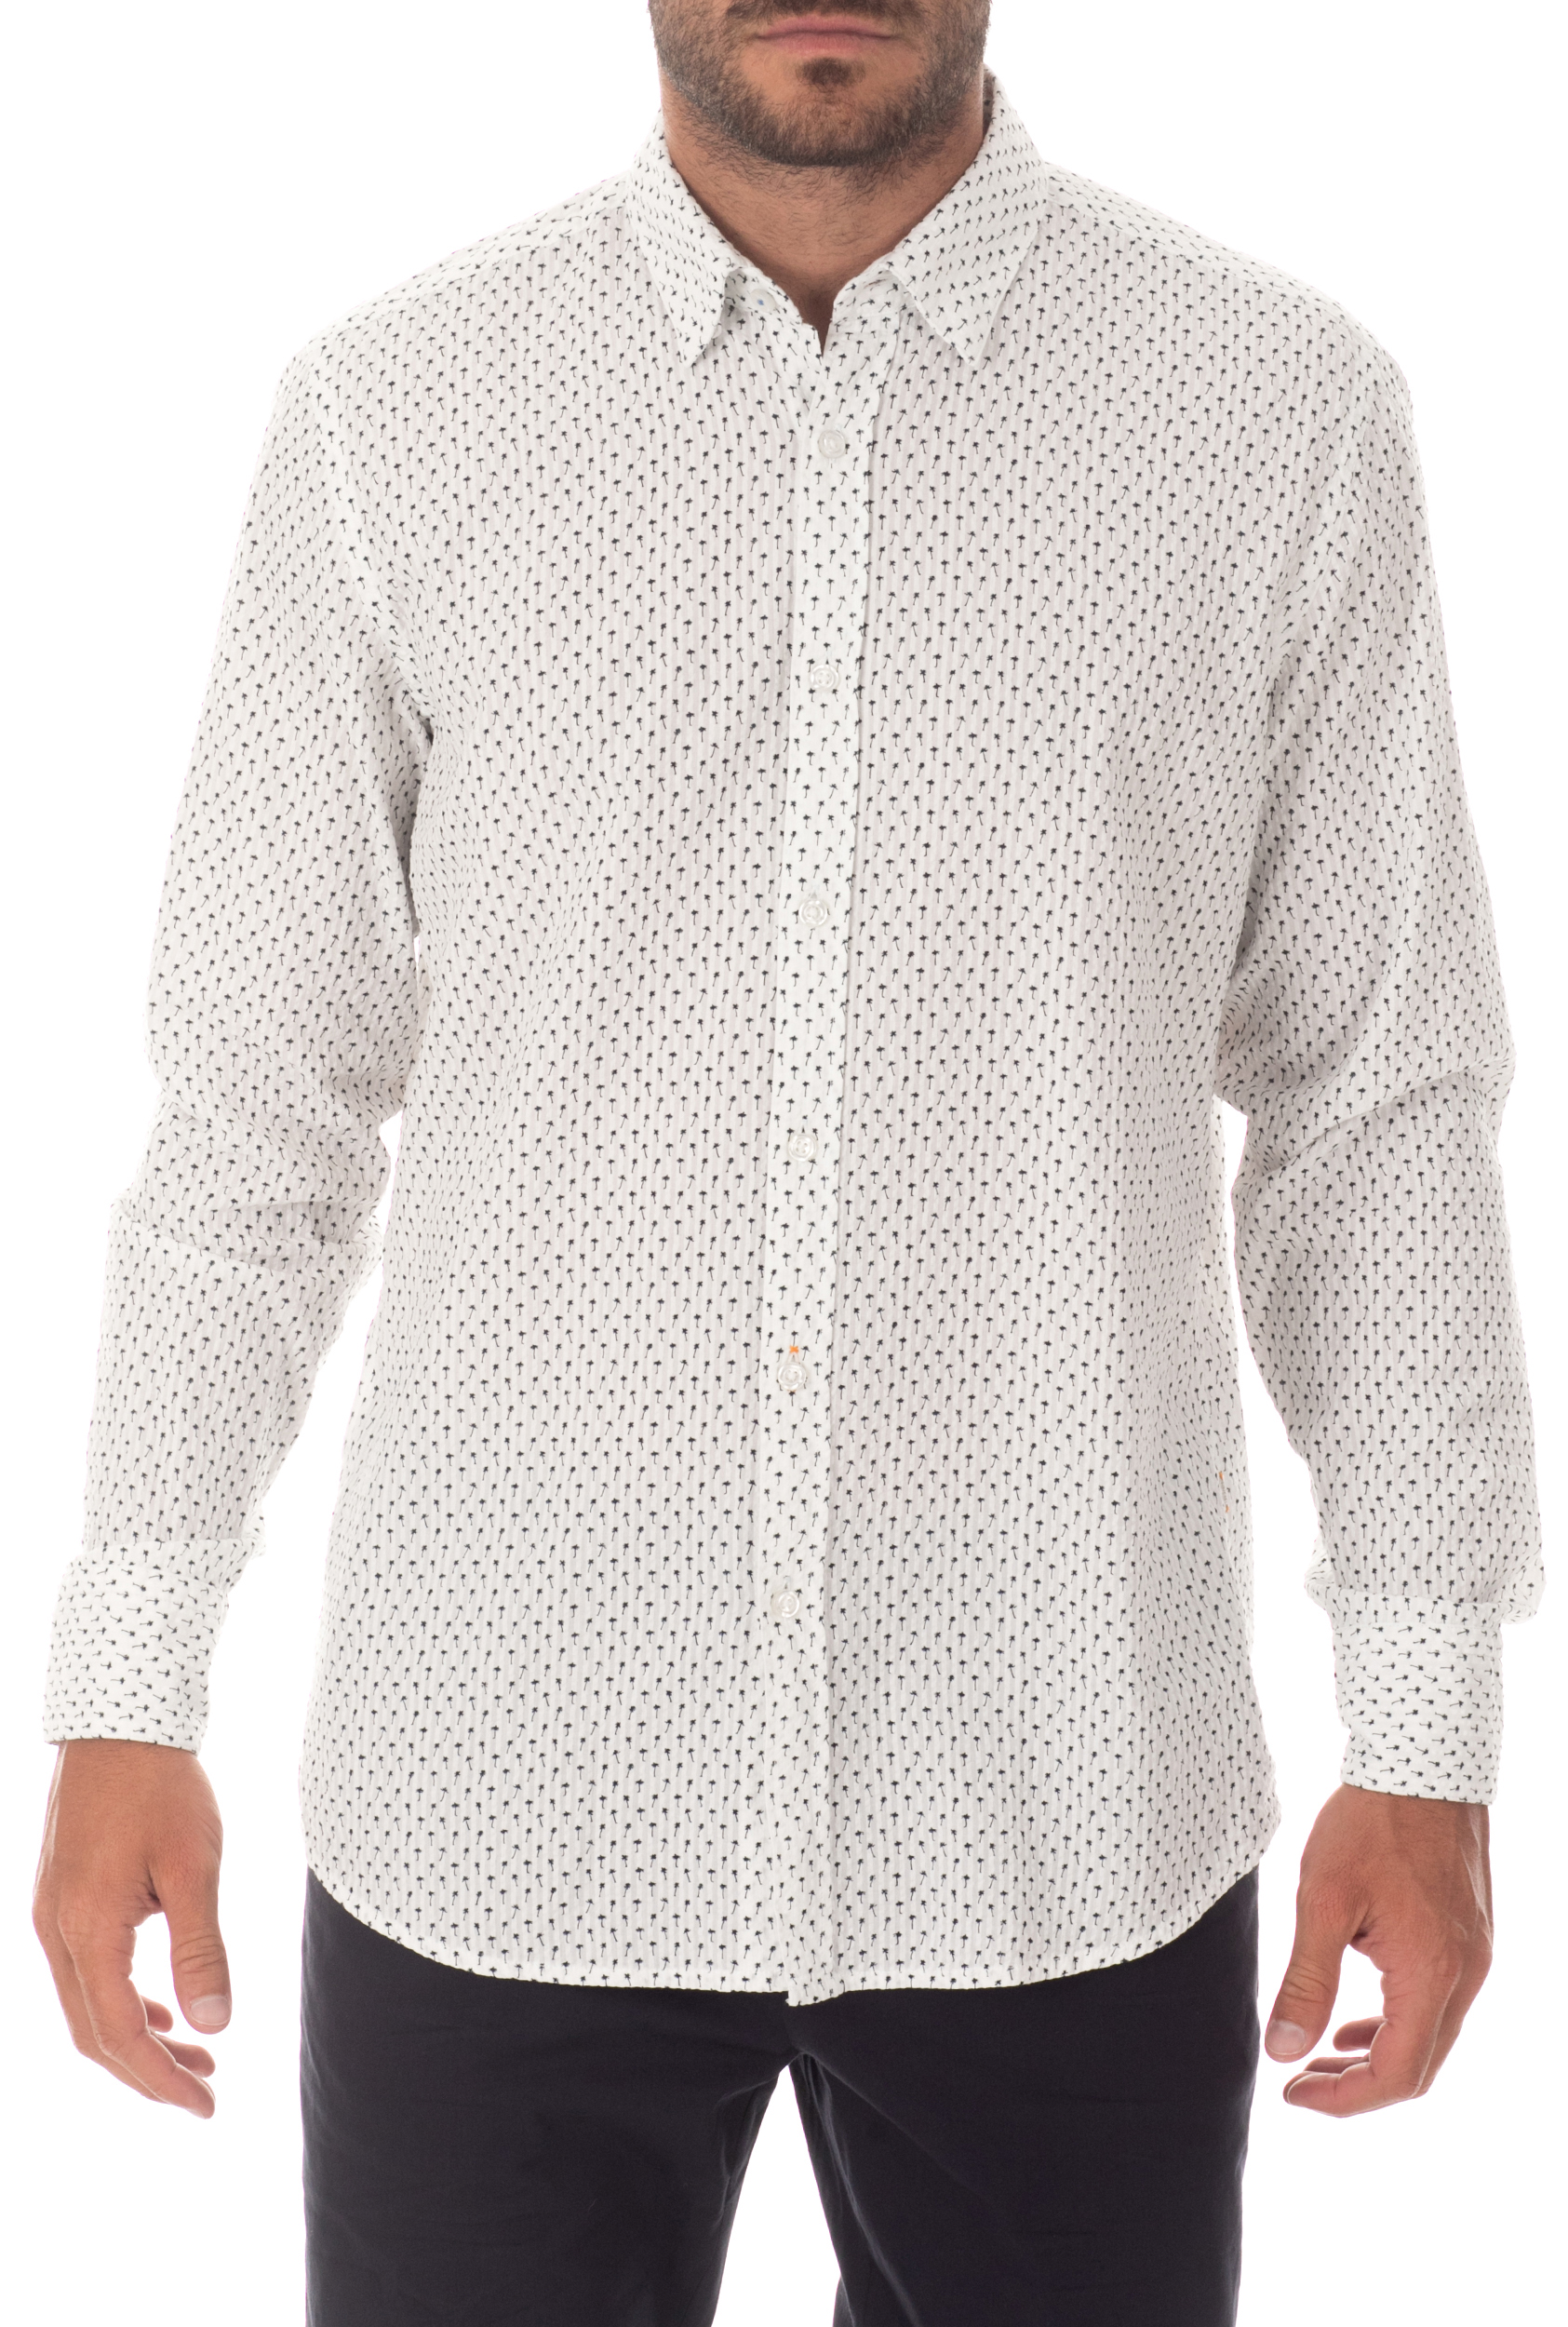 Ανδρικά/Ρούχα/Πουκάμισα/Μακρυμάνικα BOSS - Ανδρικό πουκάμισο BOSS Relegant λευκό